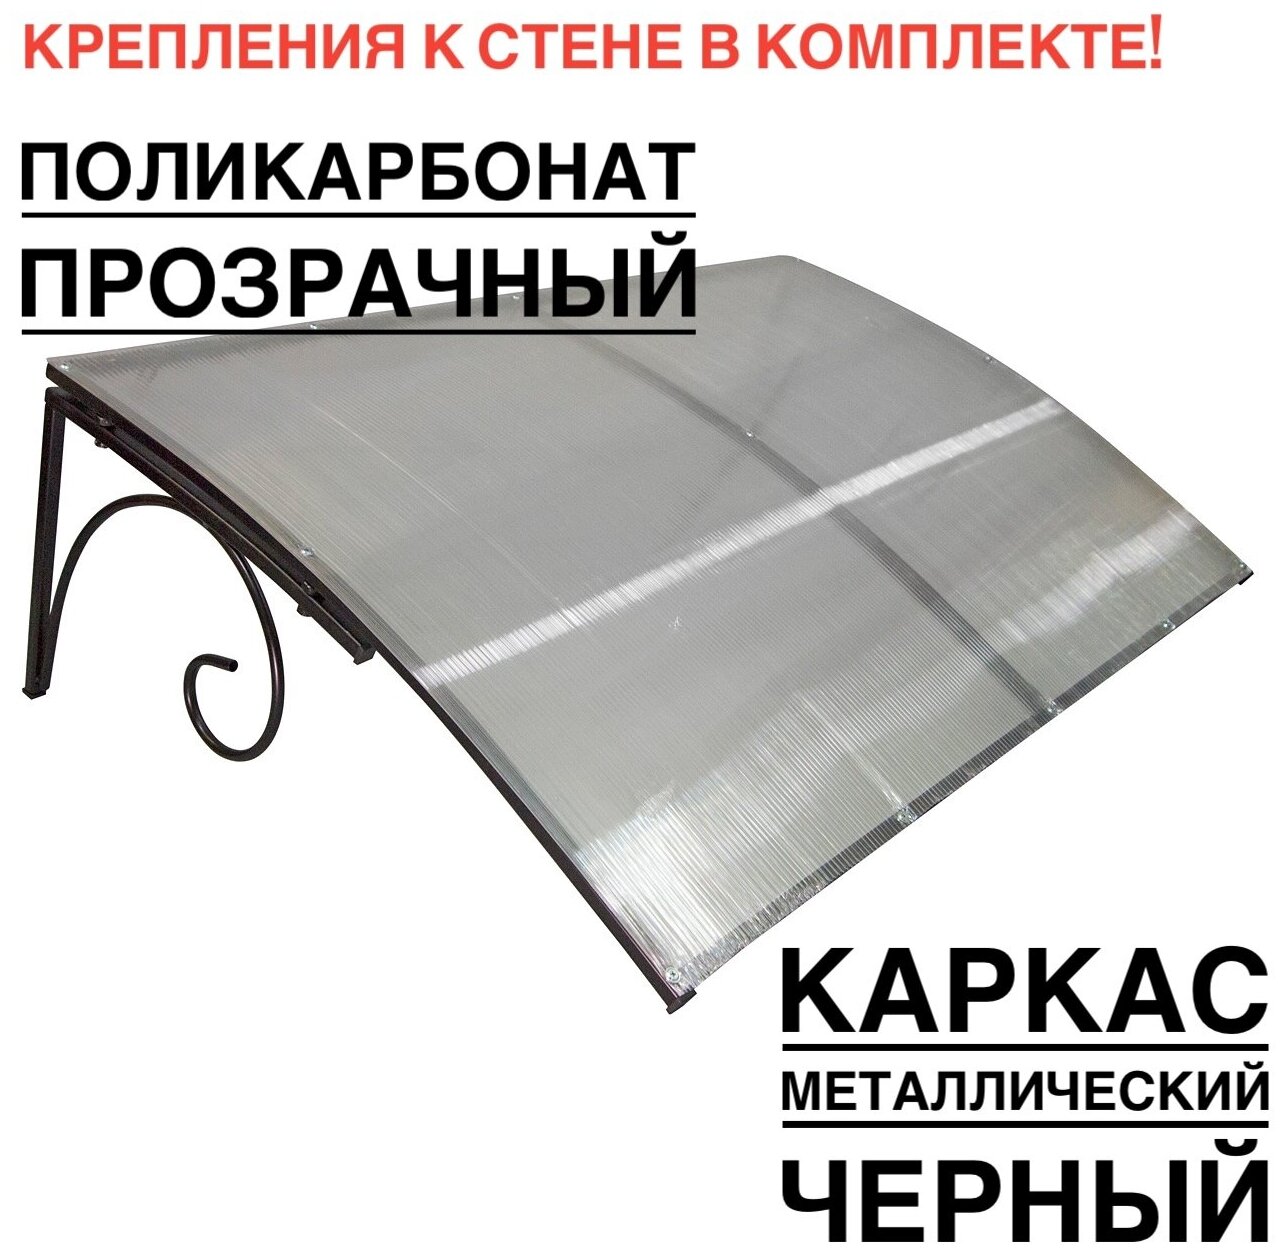 Козырек металлический над входной дверью ArtCore YS20 черный с прозрачным поликарбонатом, 115х80х37 см — купить в интернет-магазине по низкой цене на Яндекс Маркете